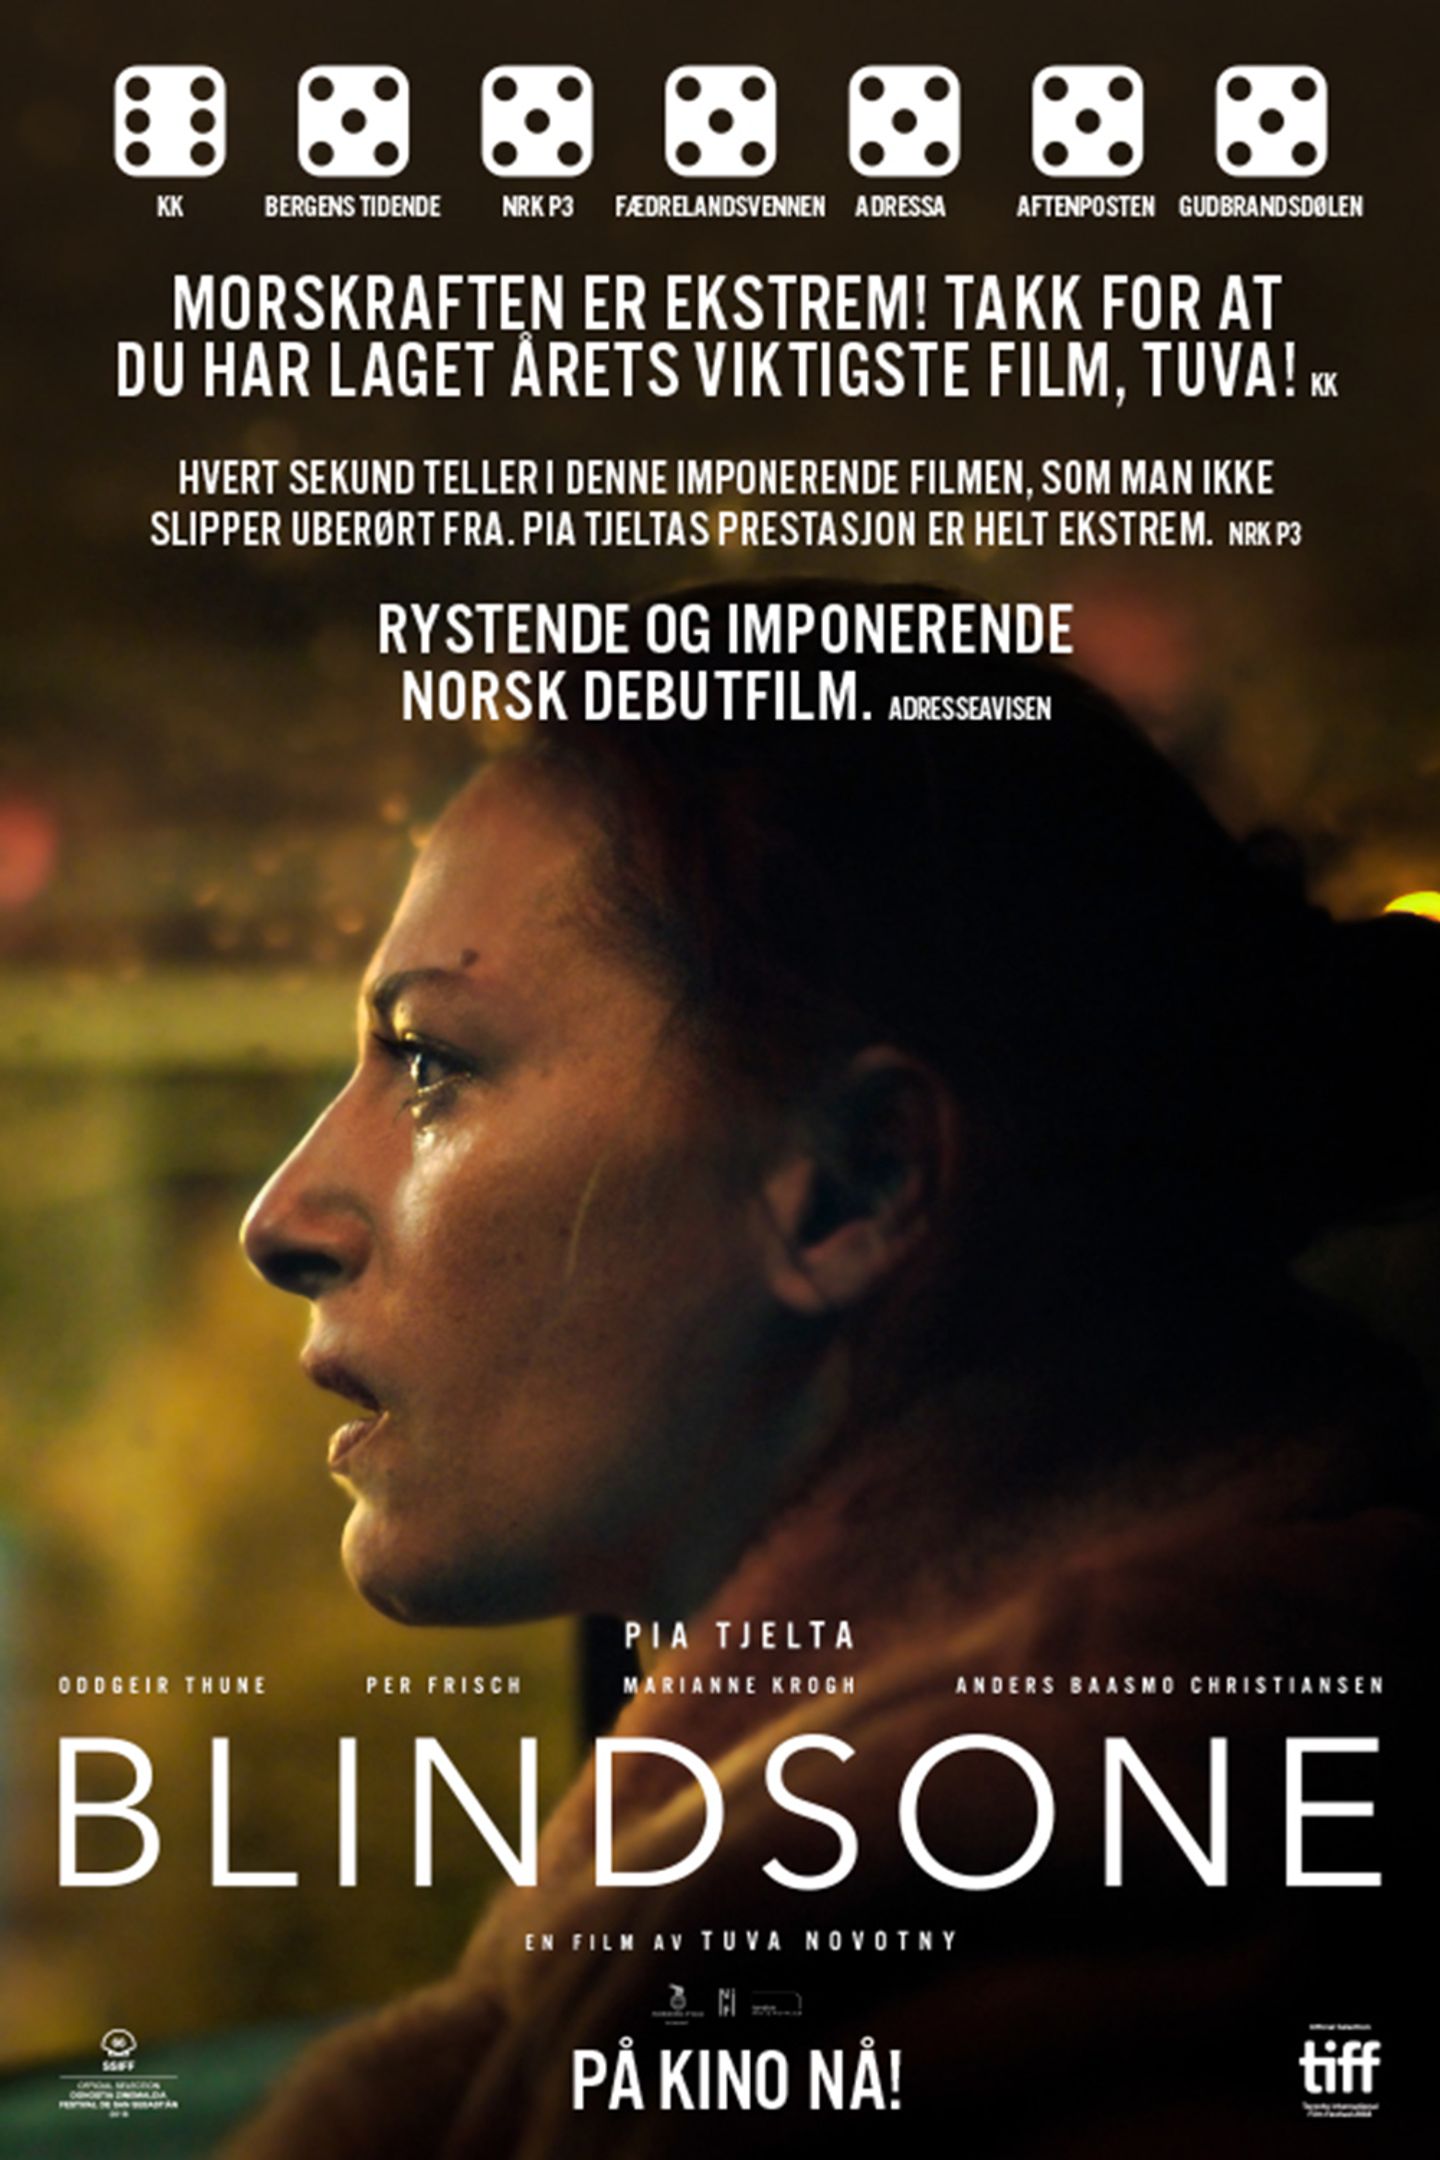 Plakat for 'Blindsone'